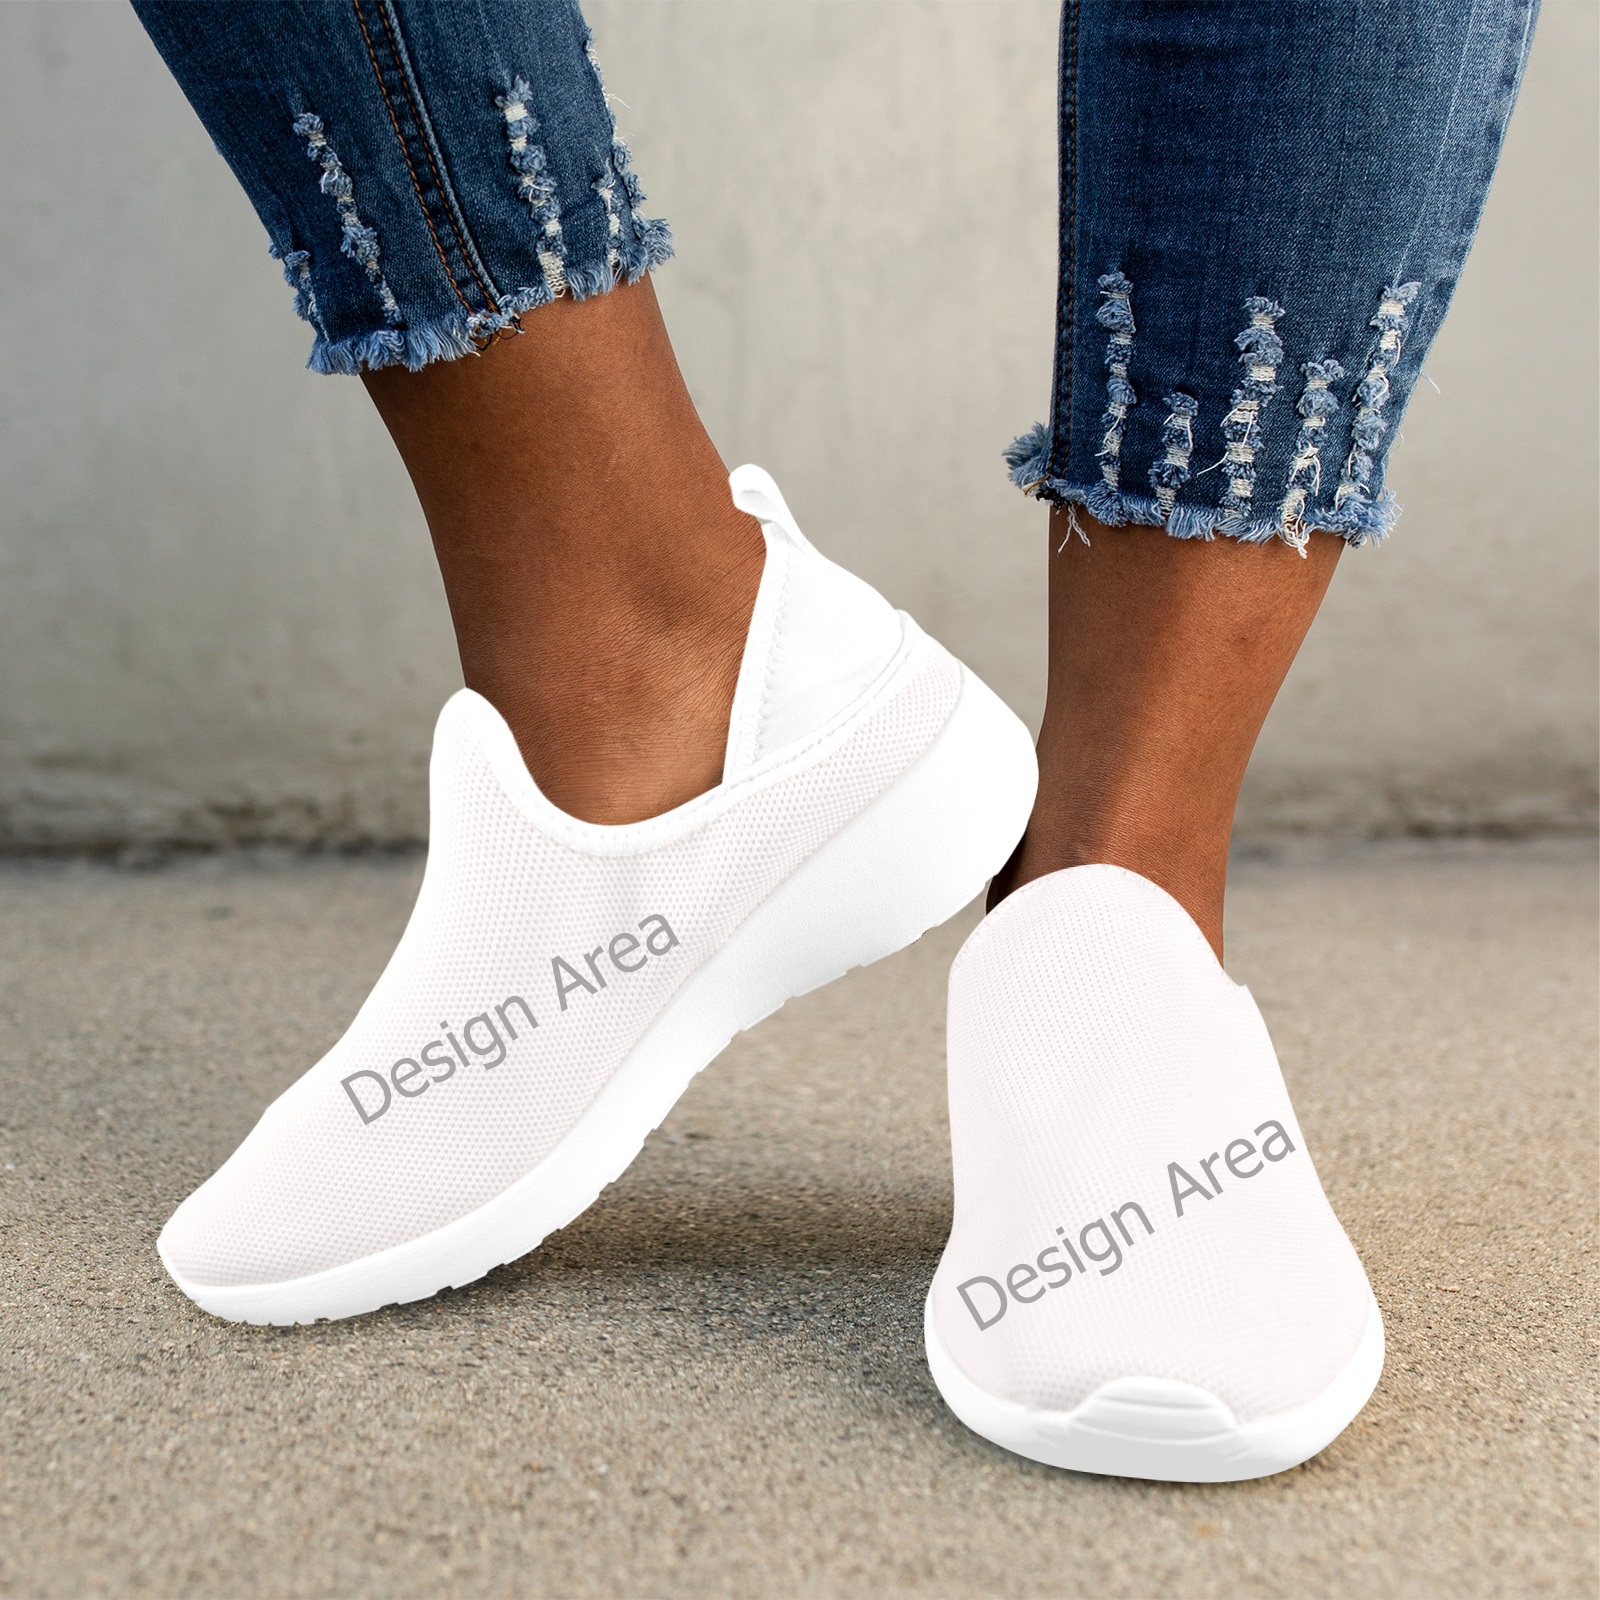 Fly Weave Drop-in Heel Sneakers for Women (Model 02002)